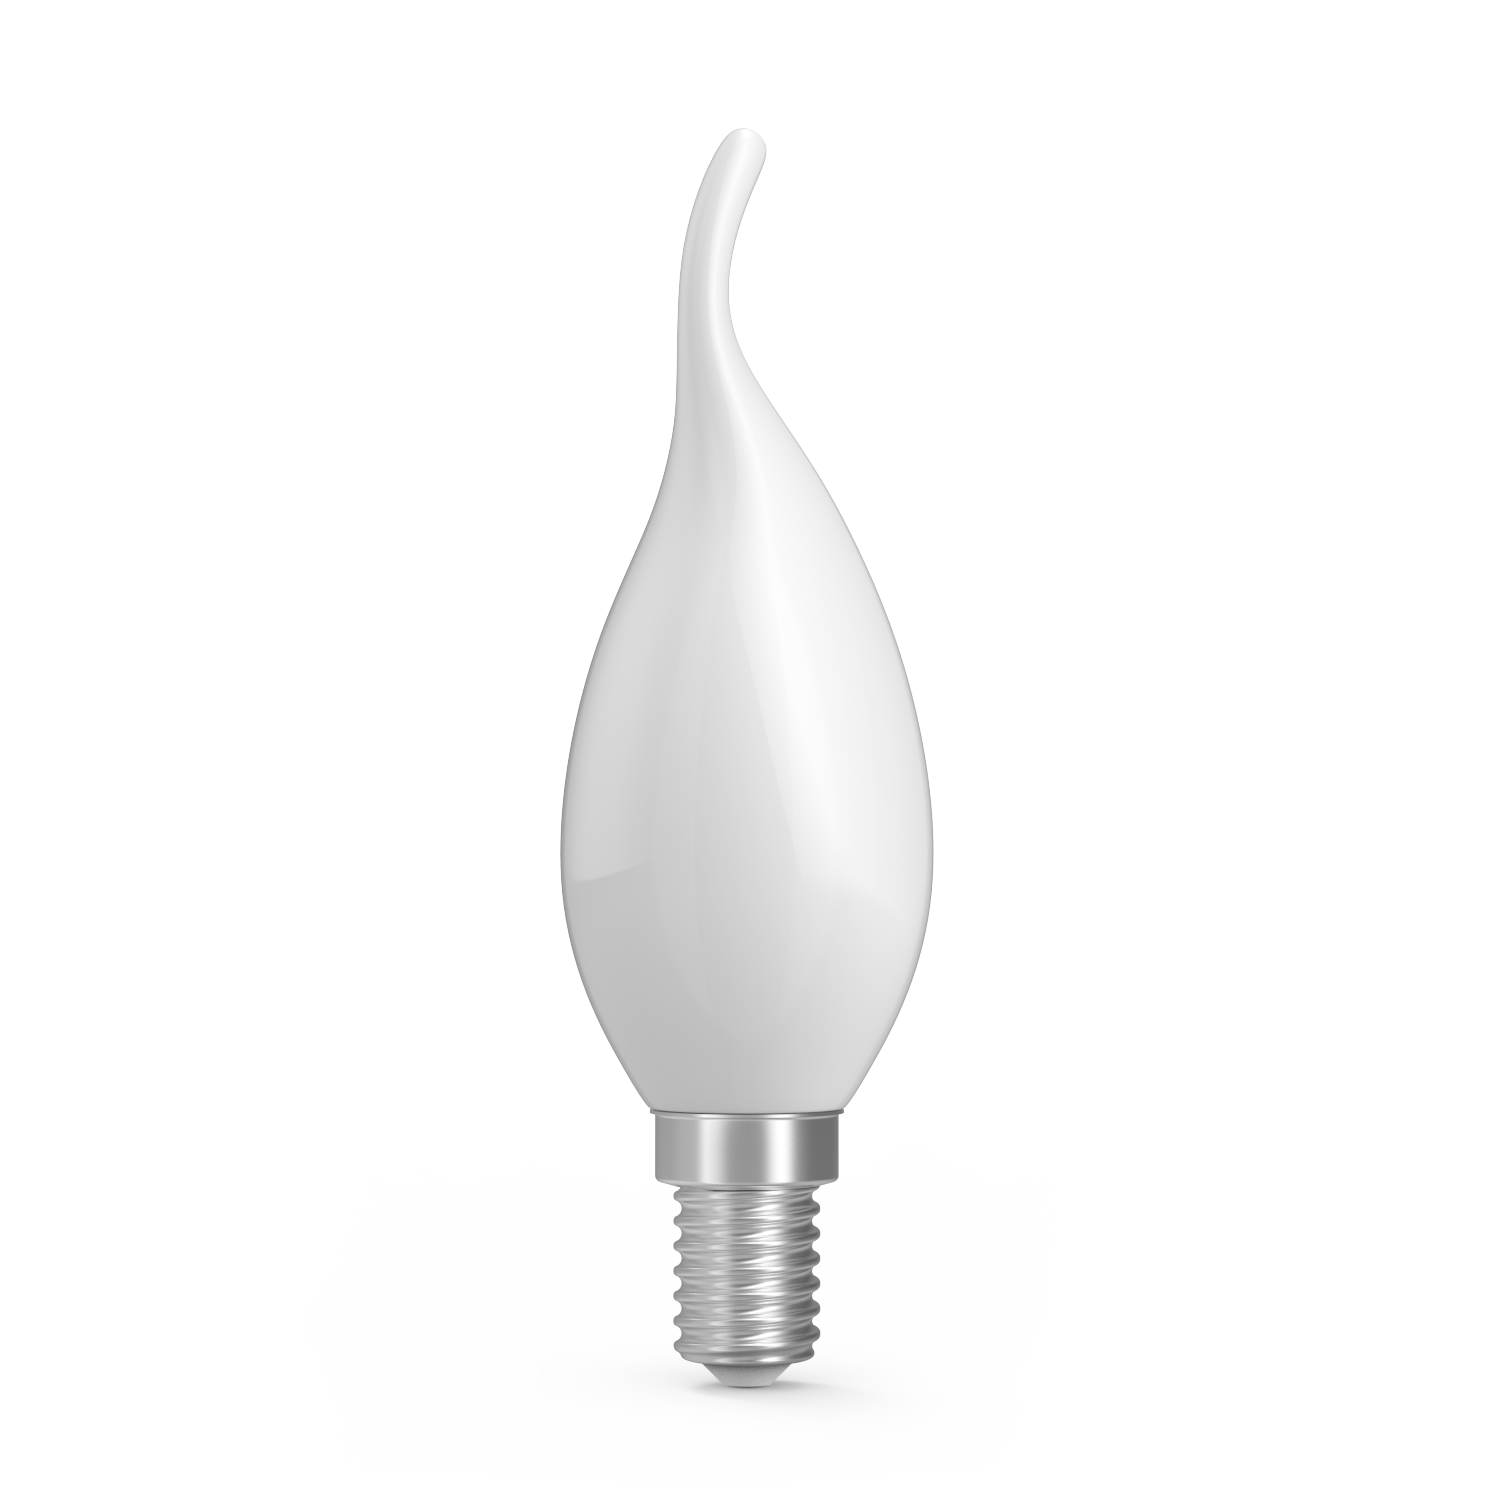 Лампа Gauss Basic Filament Свеча на ветру 6,5W 480lm 2700К Е14 milky  LED 1/10/50